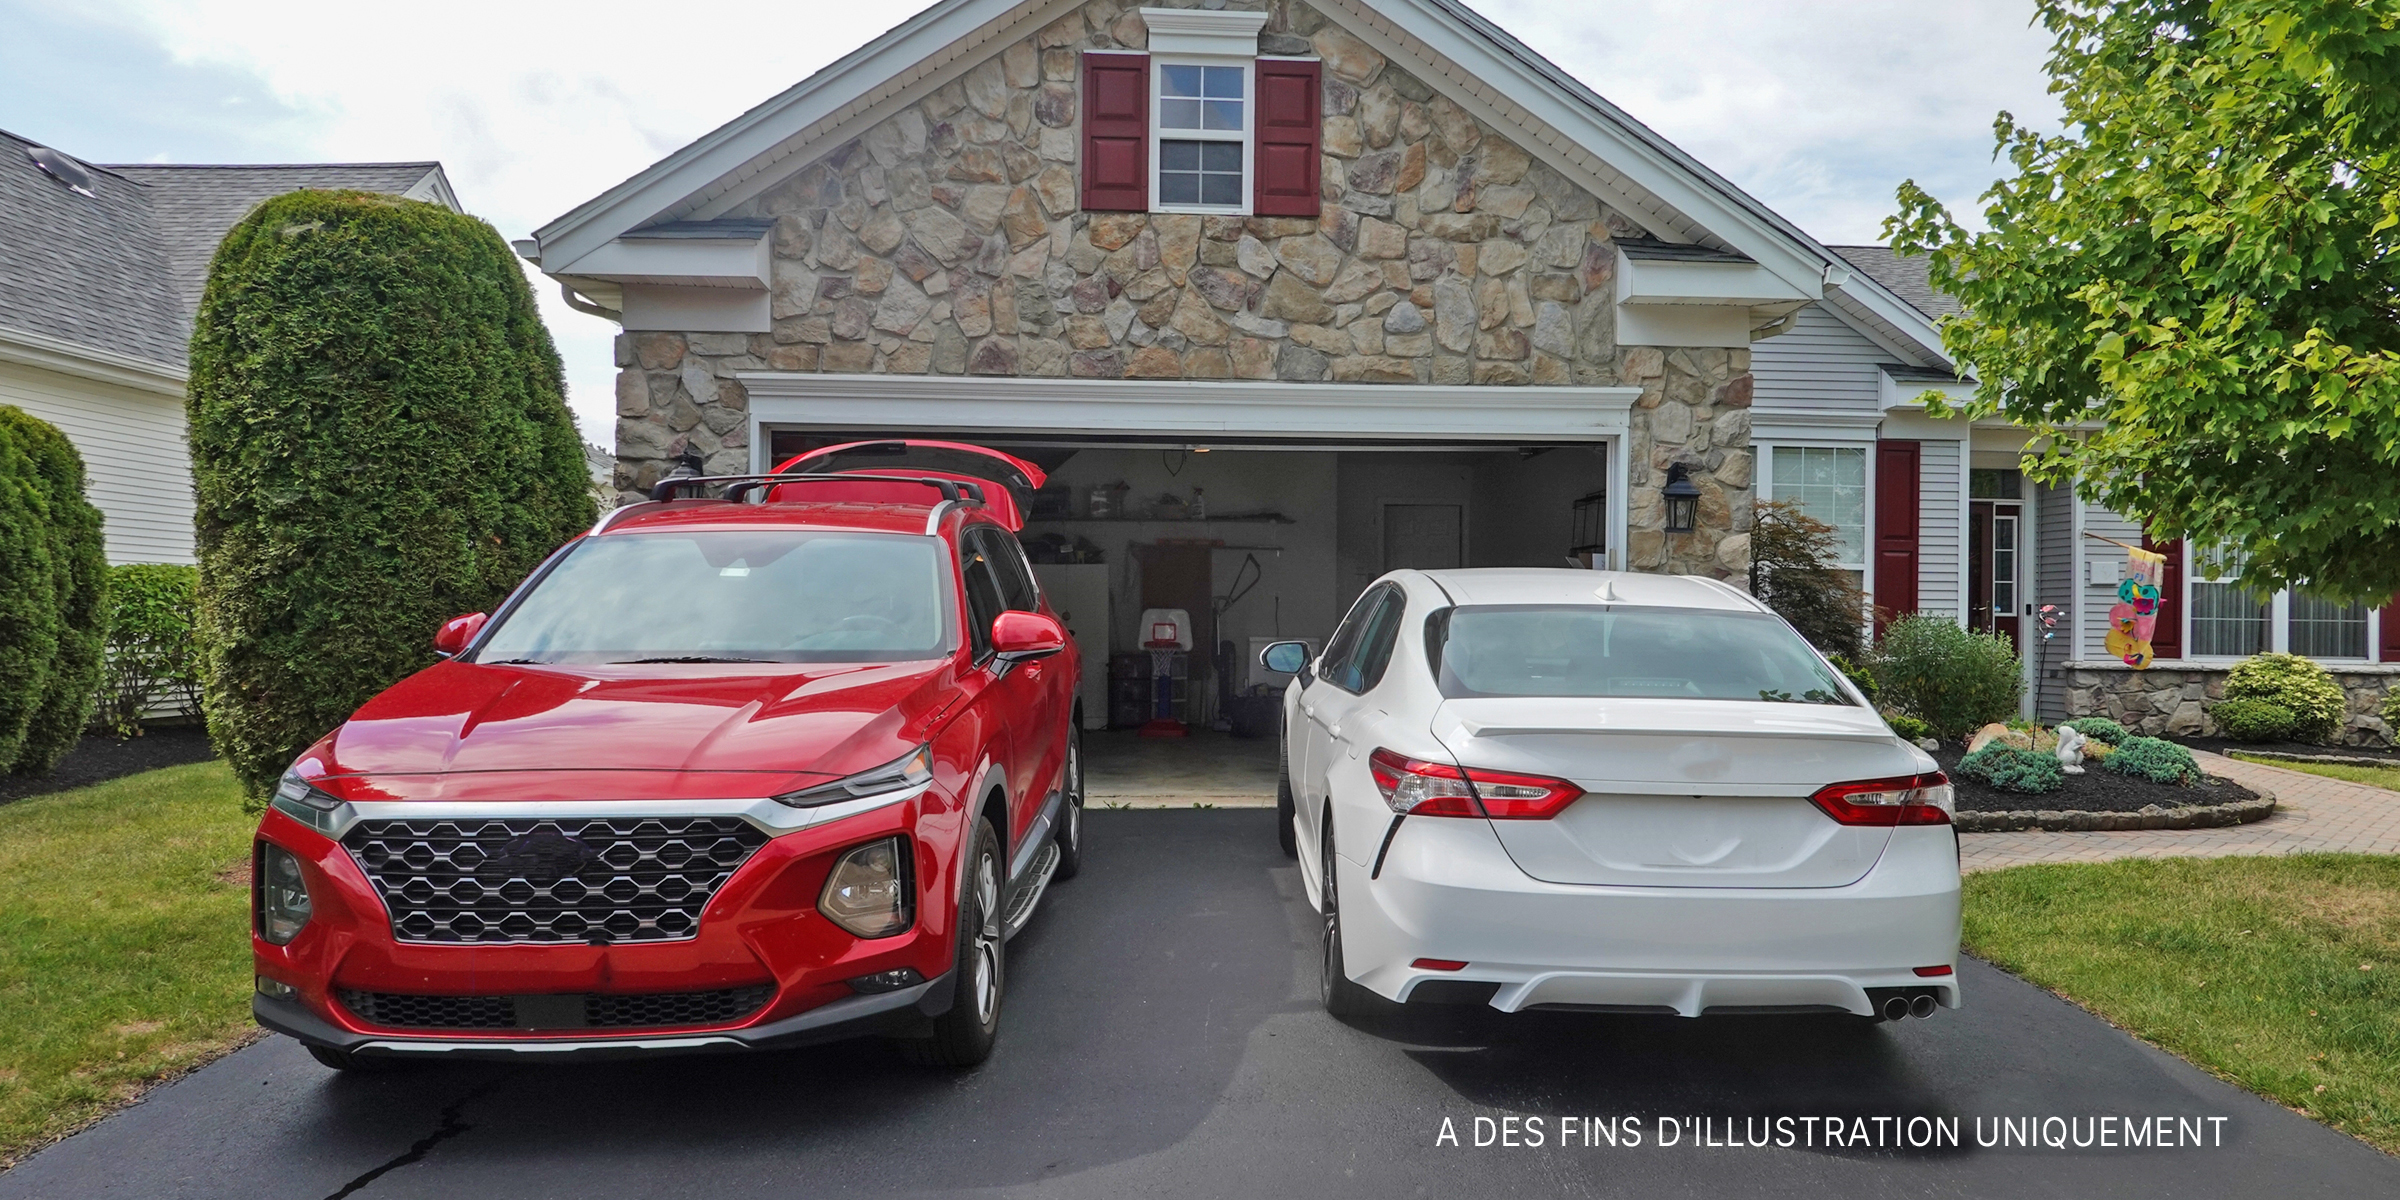 Un SUV rouge et une berline blanche garés dans une allée | Source : Shutterstock